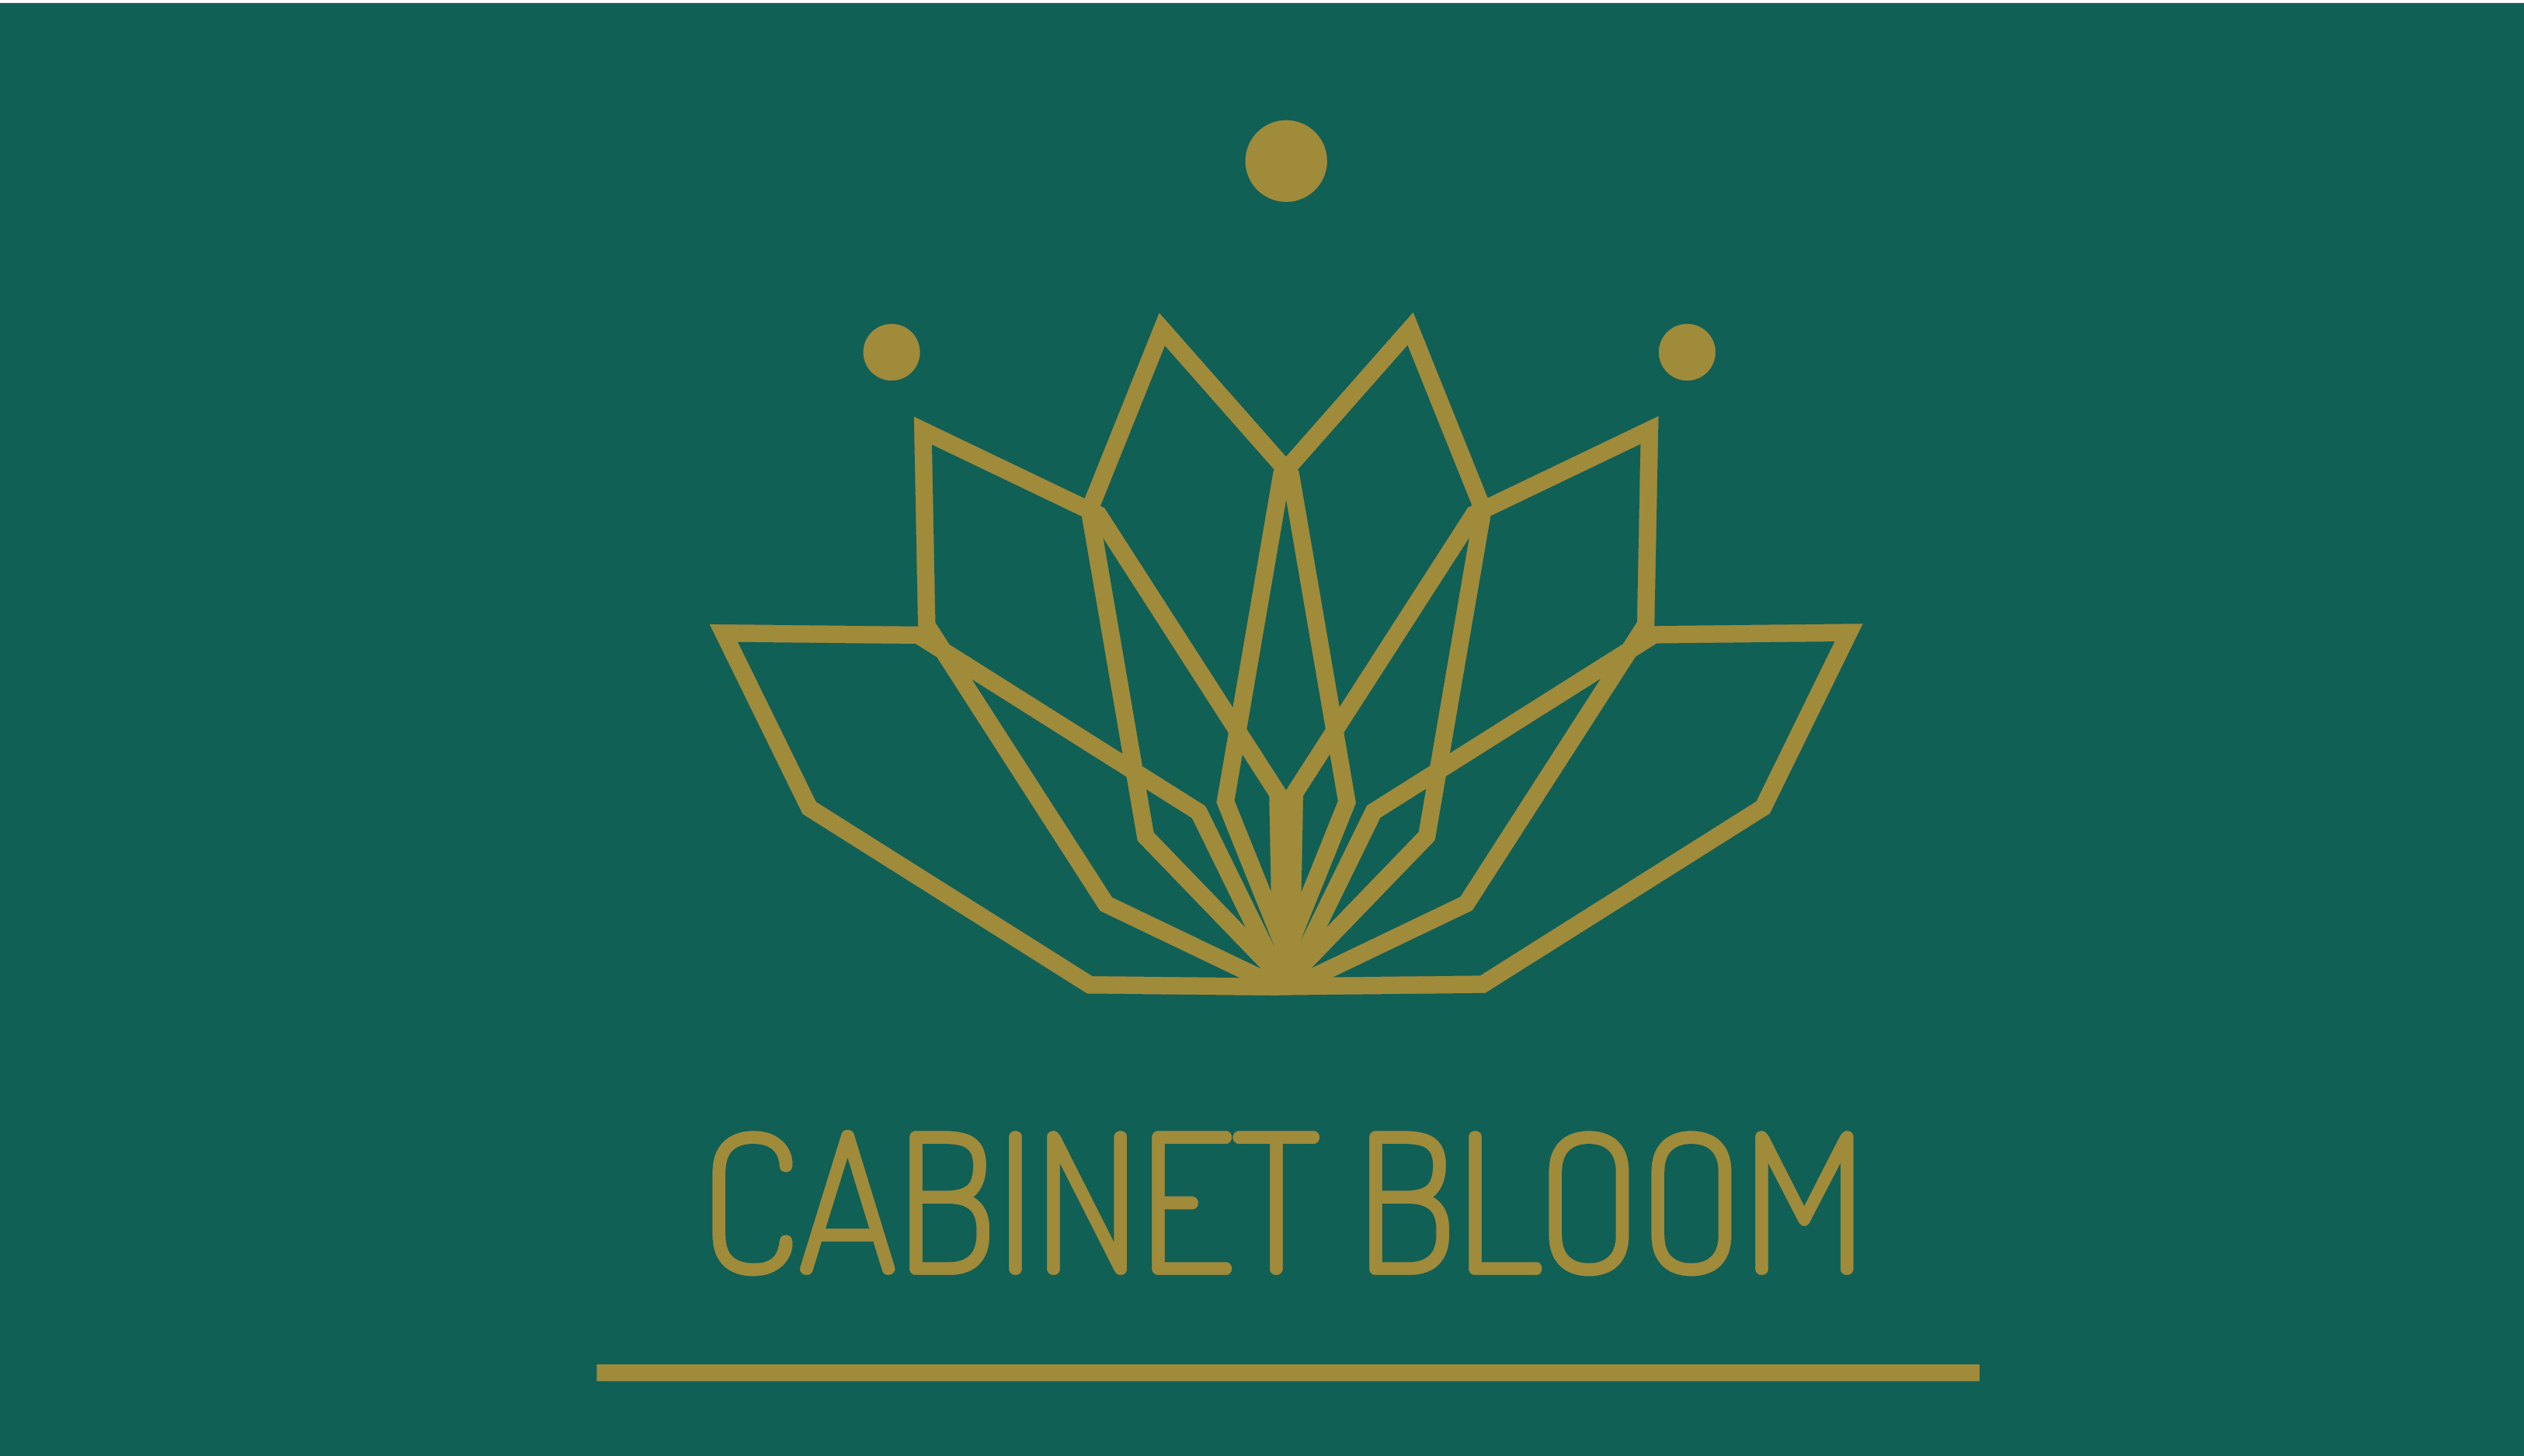 projet-cabinet-bloom